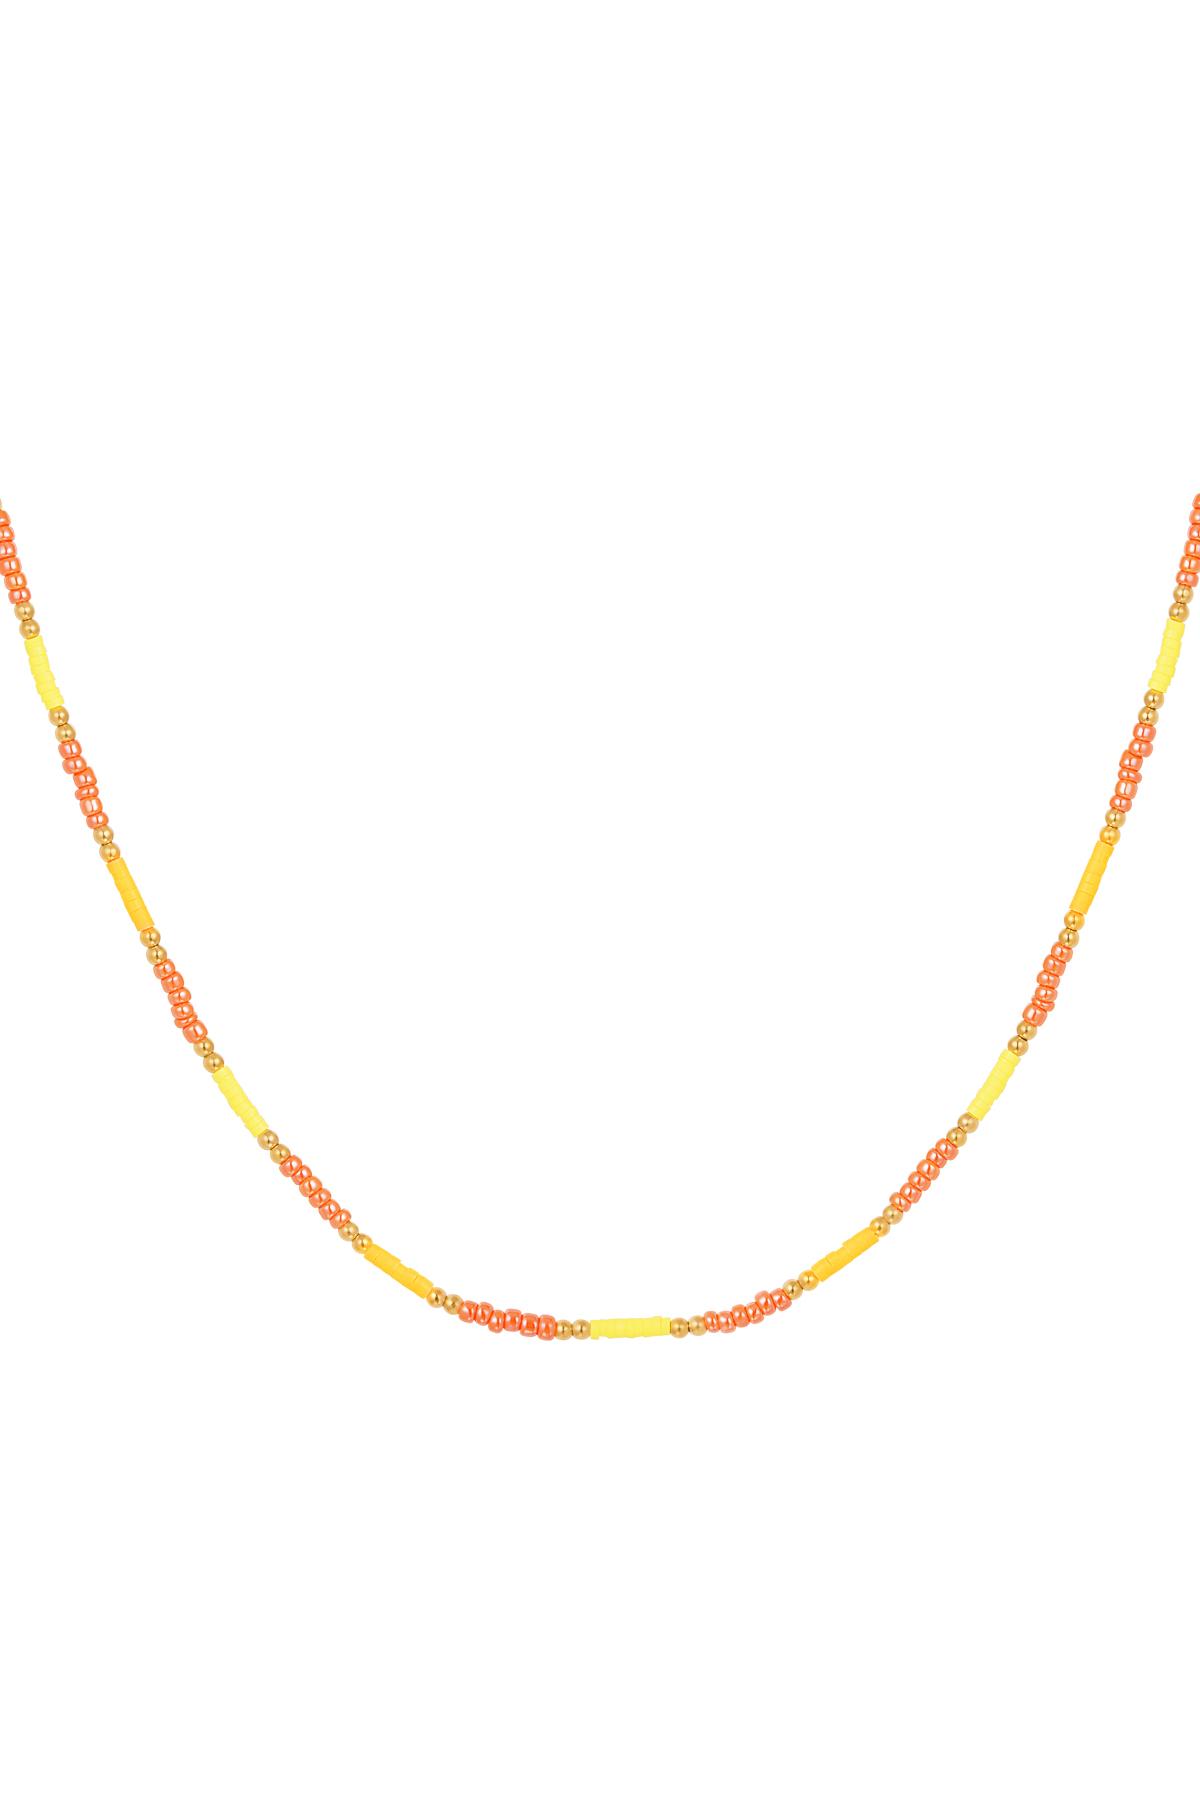 Halskette kleine bunte Perlen - gelb/orange